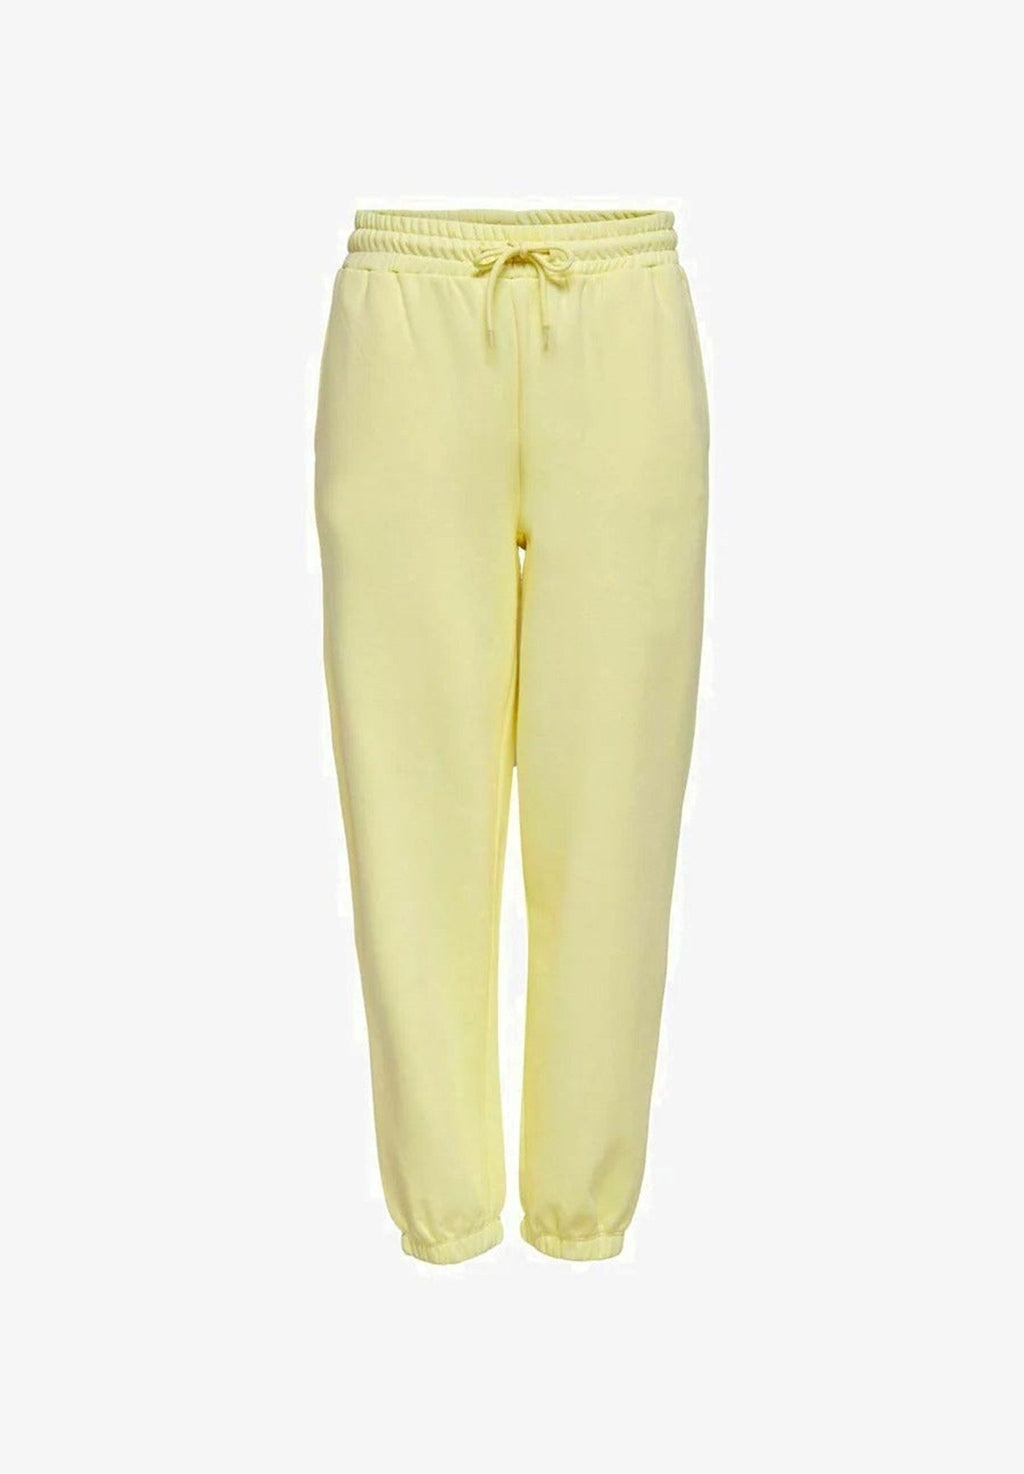 Pantalones de chándal cómodos - amarillo pastel